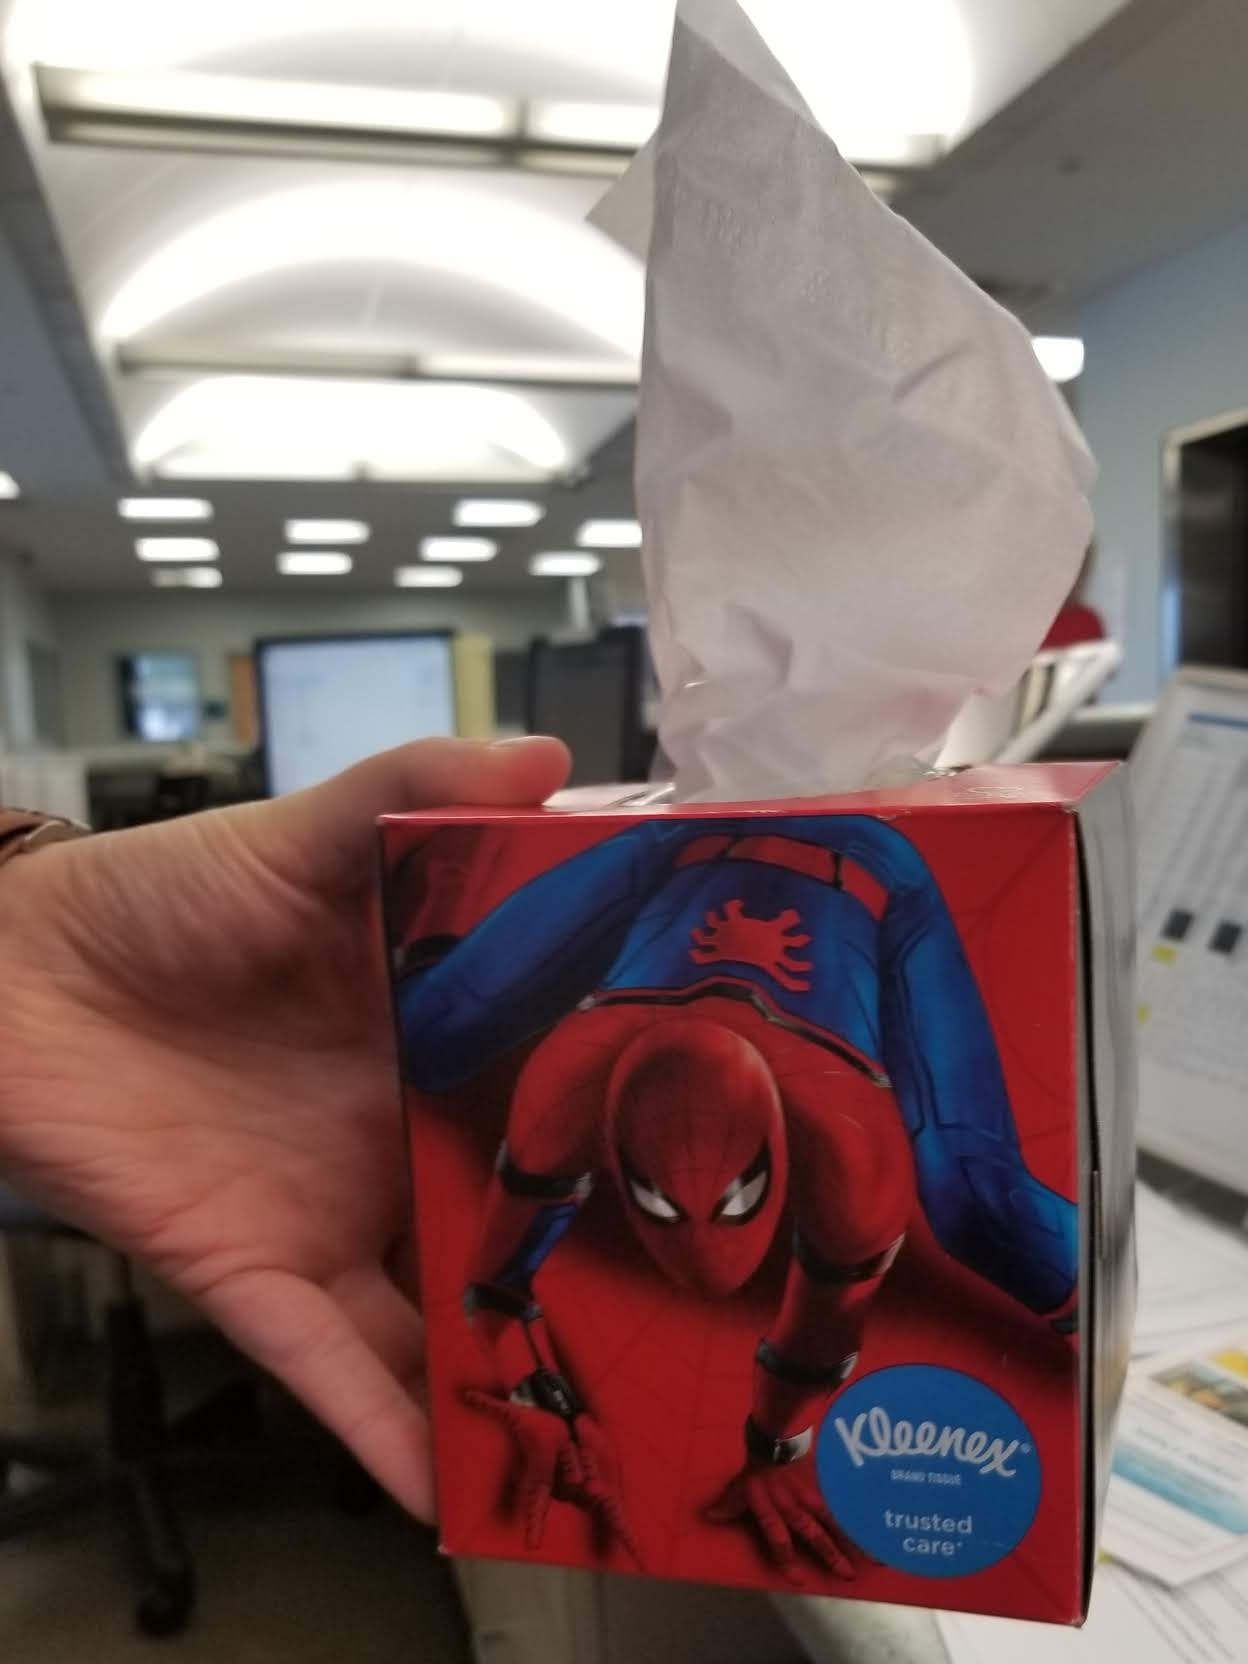 Kleenex really gave this Spider-Man tissue box a "crappy" design